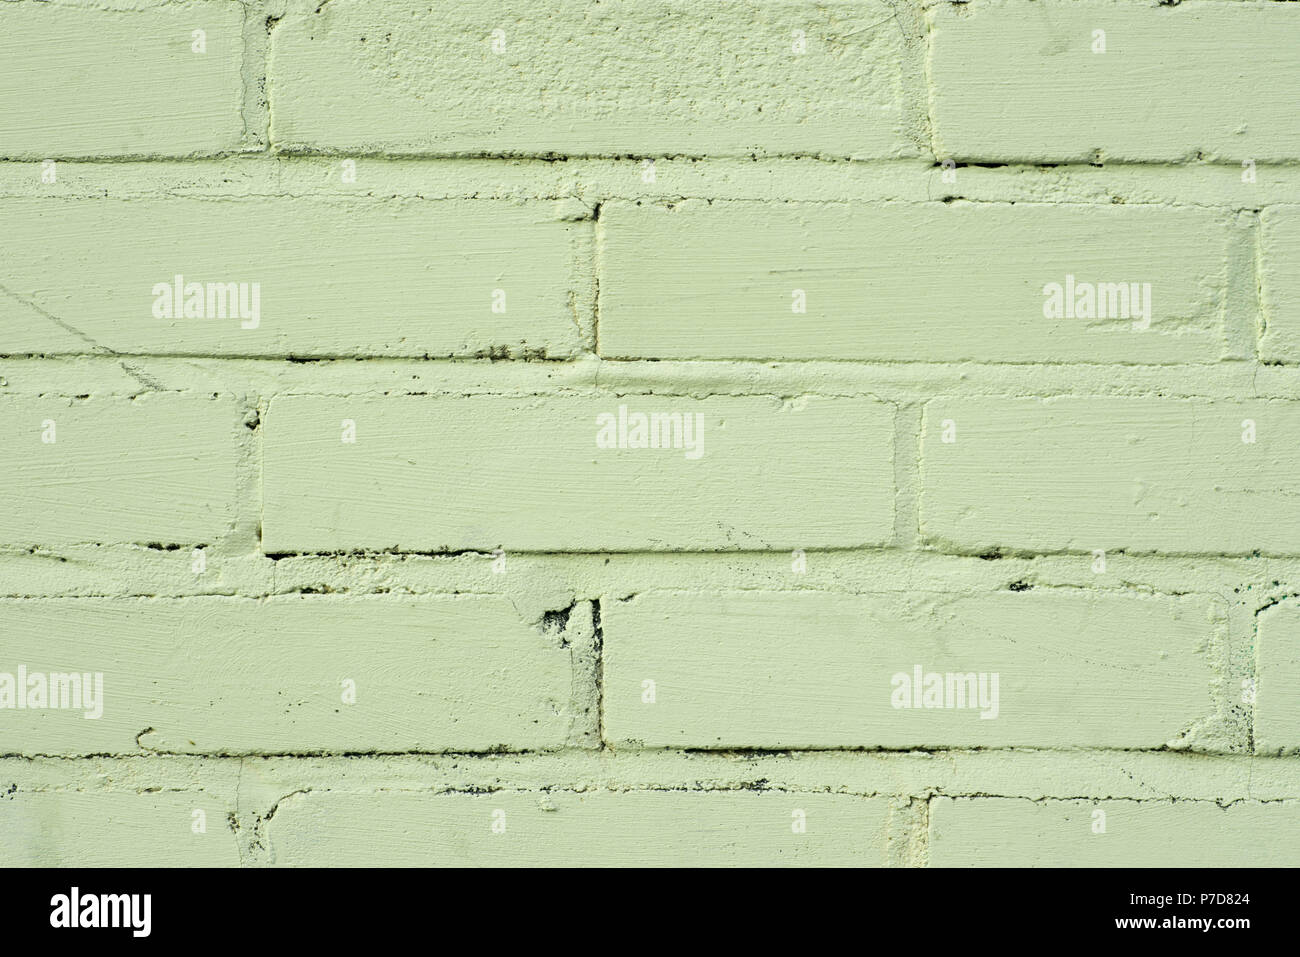 Alte pistazie Farbe bemalte Mauer Textur Hintergrund Stockfotografie - Alamy